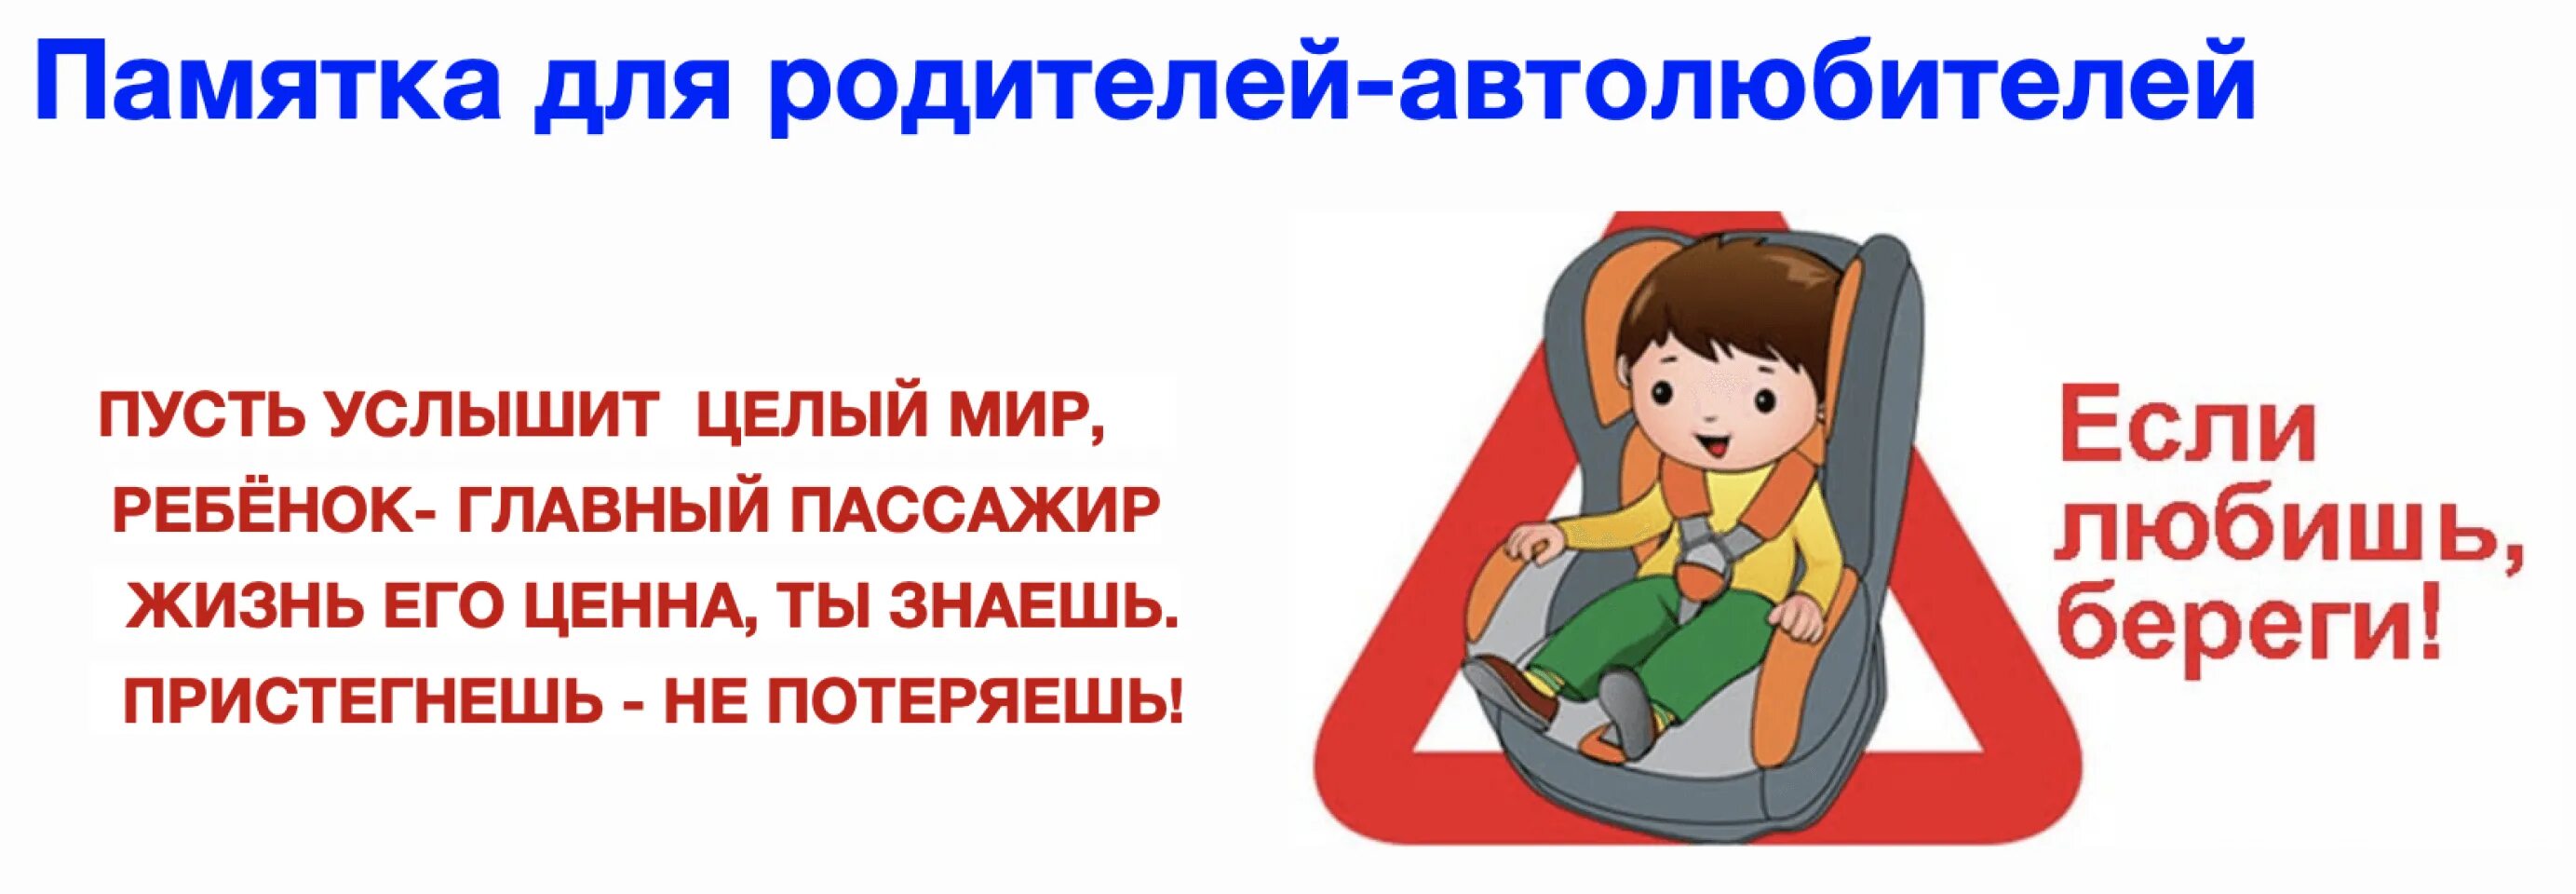 Водитель пристегни ремень безопасности. Ребенок главный пассажир памятка для родителей. Автокресло детям памятка для детей. Безопасность детей в автомобиле. Родители пристегните детей ремнями безопасности.